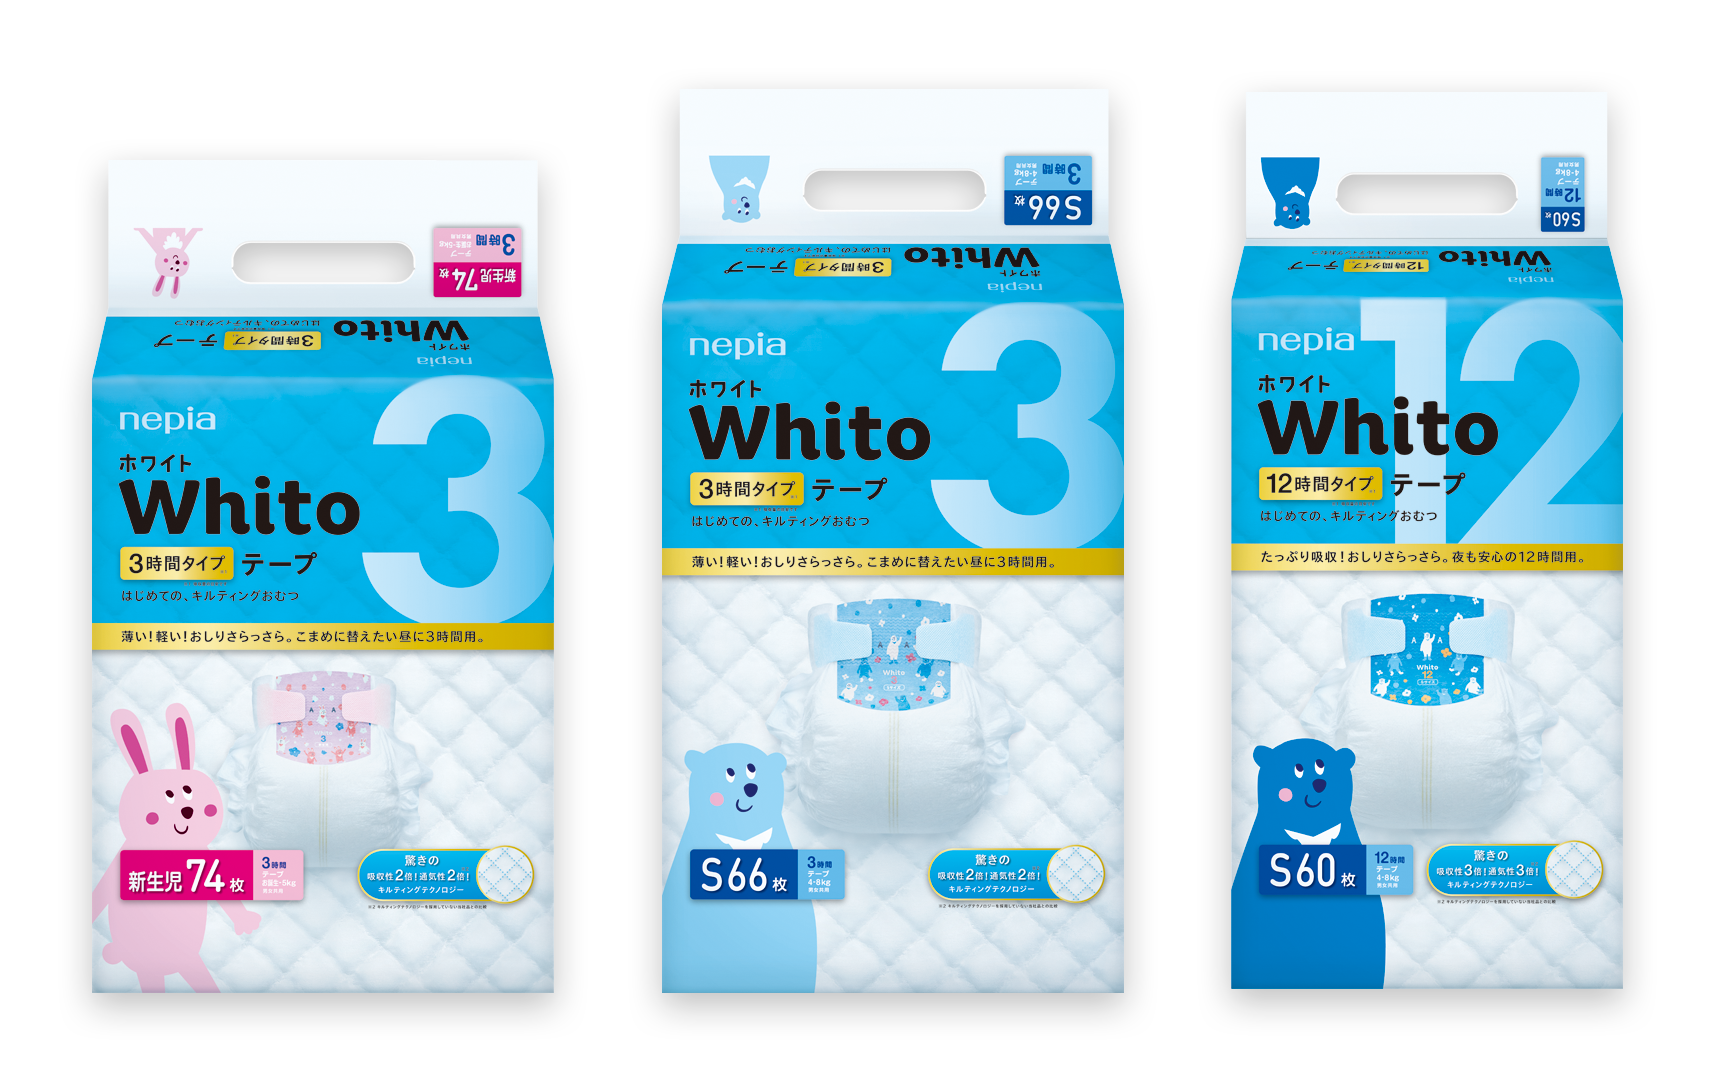 商品情報 | Whito（ホワイト）| ネピア